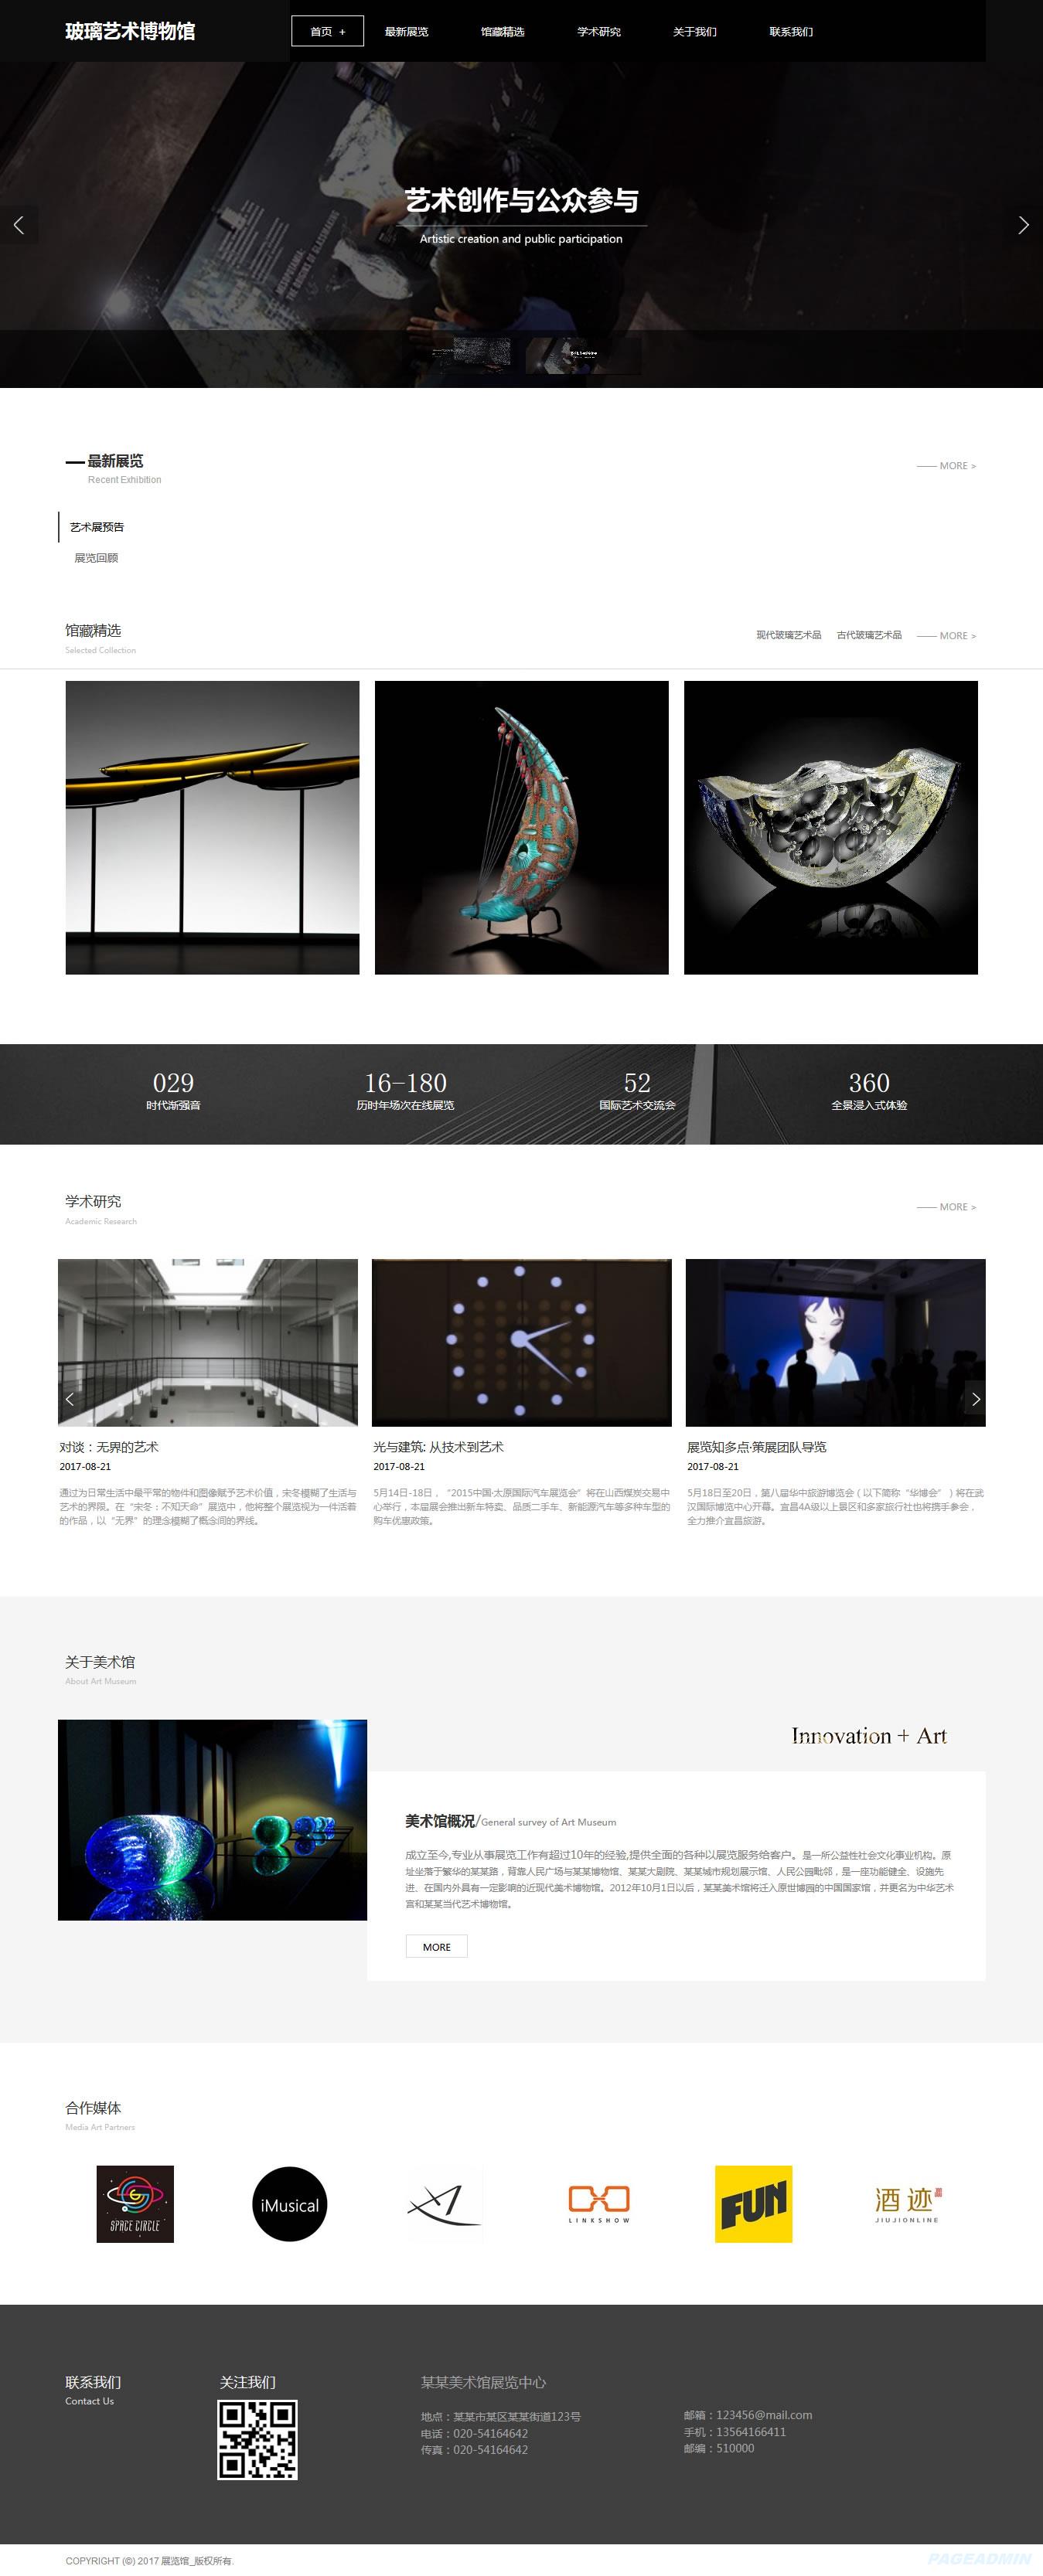 美术馆网站模板